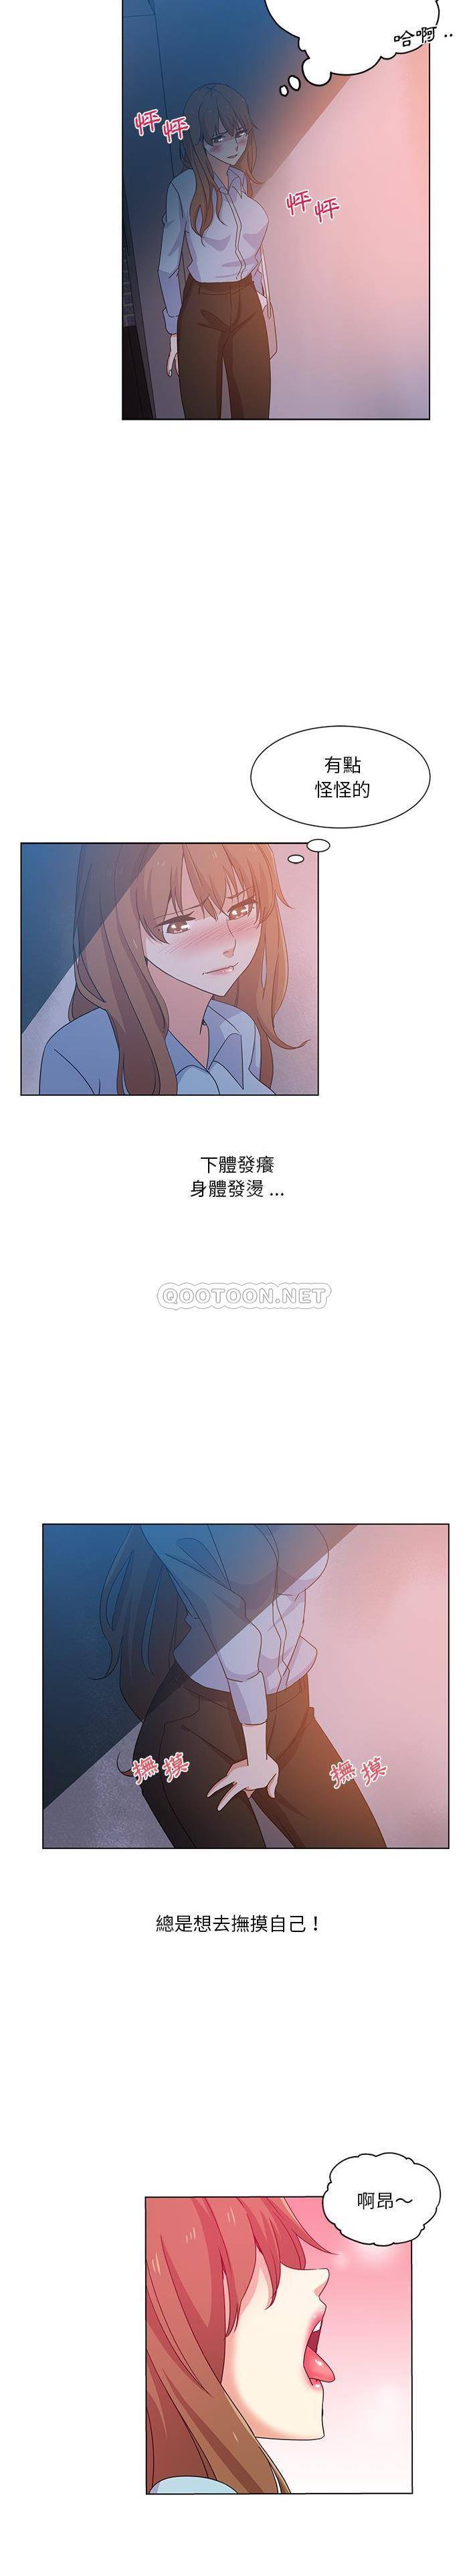 韩国污漫画 危險純友誼 第5话 5